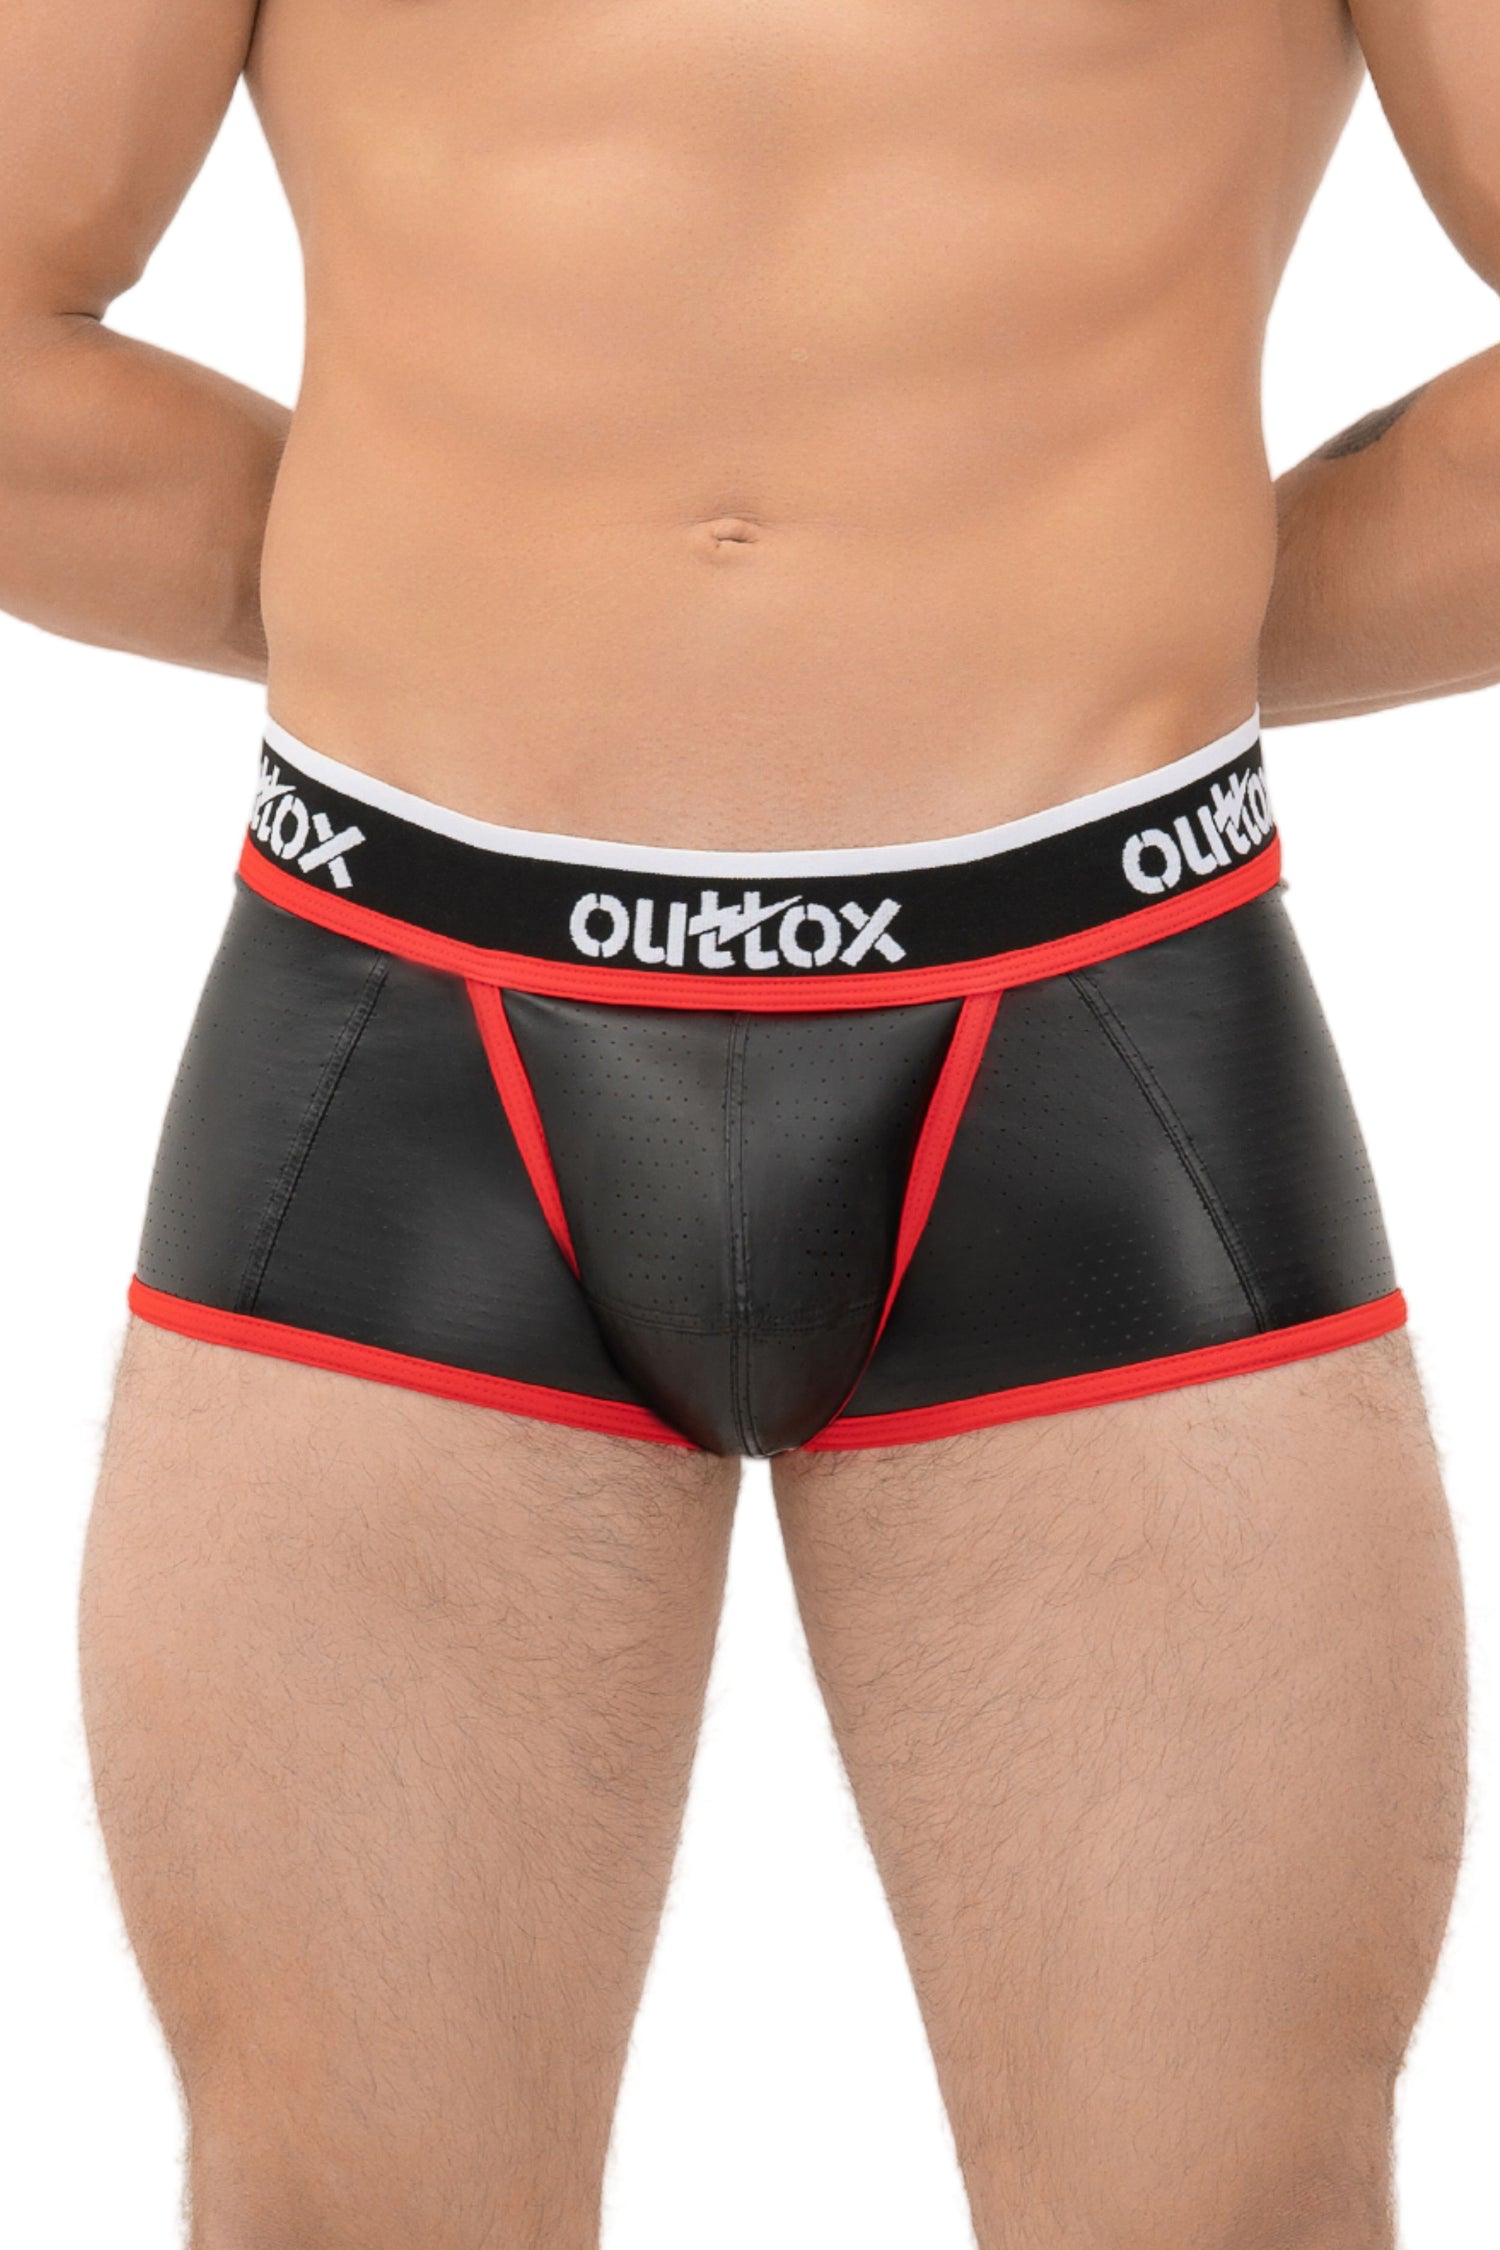 Outtox. Pantalones cortos con parte trasera abierta y bragueta a presión. Negro+rojo